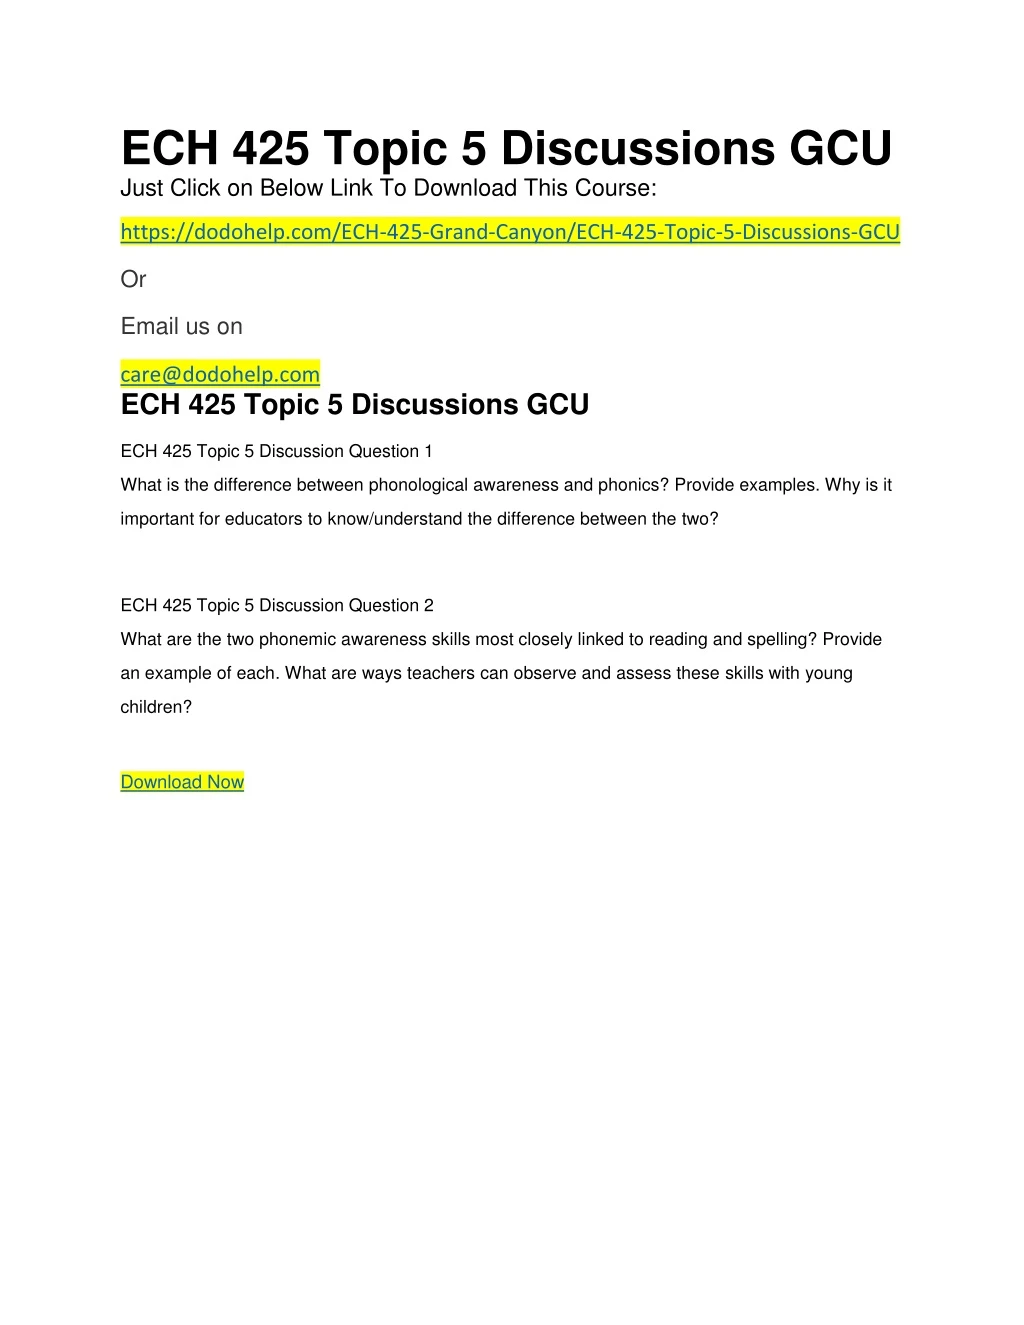 ech 425 topic 5 discussions gcu just click